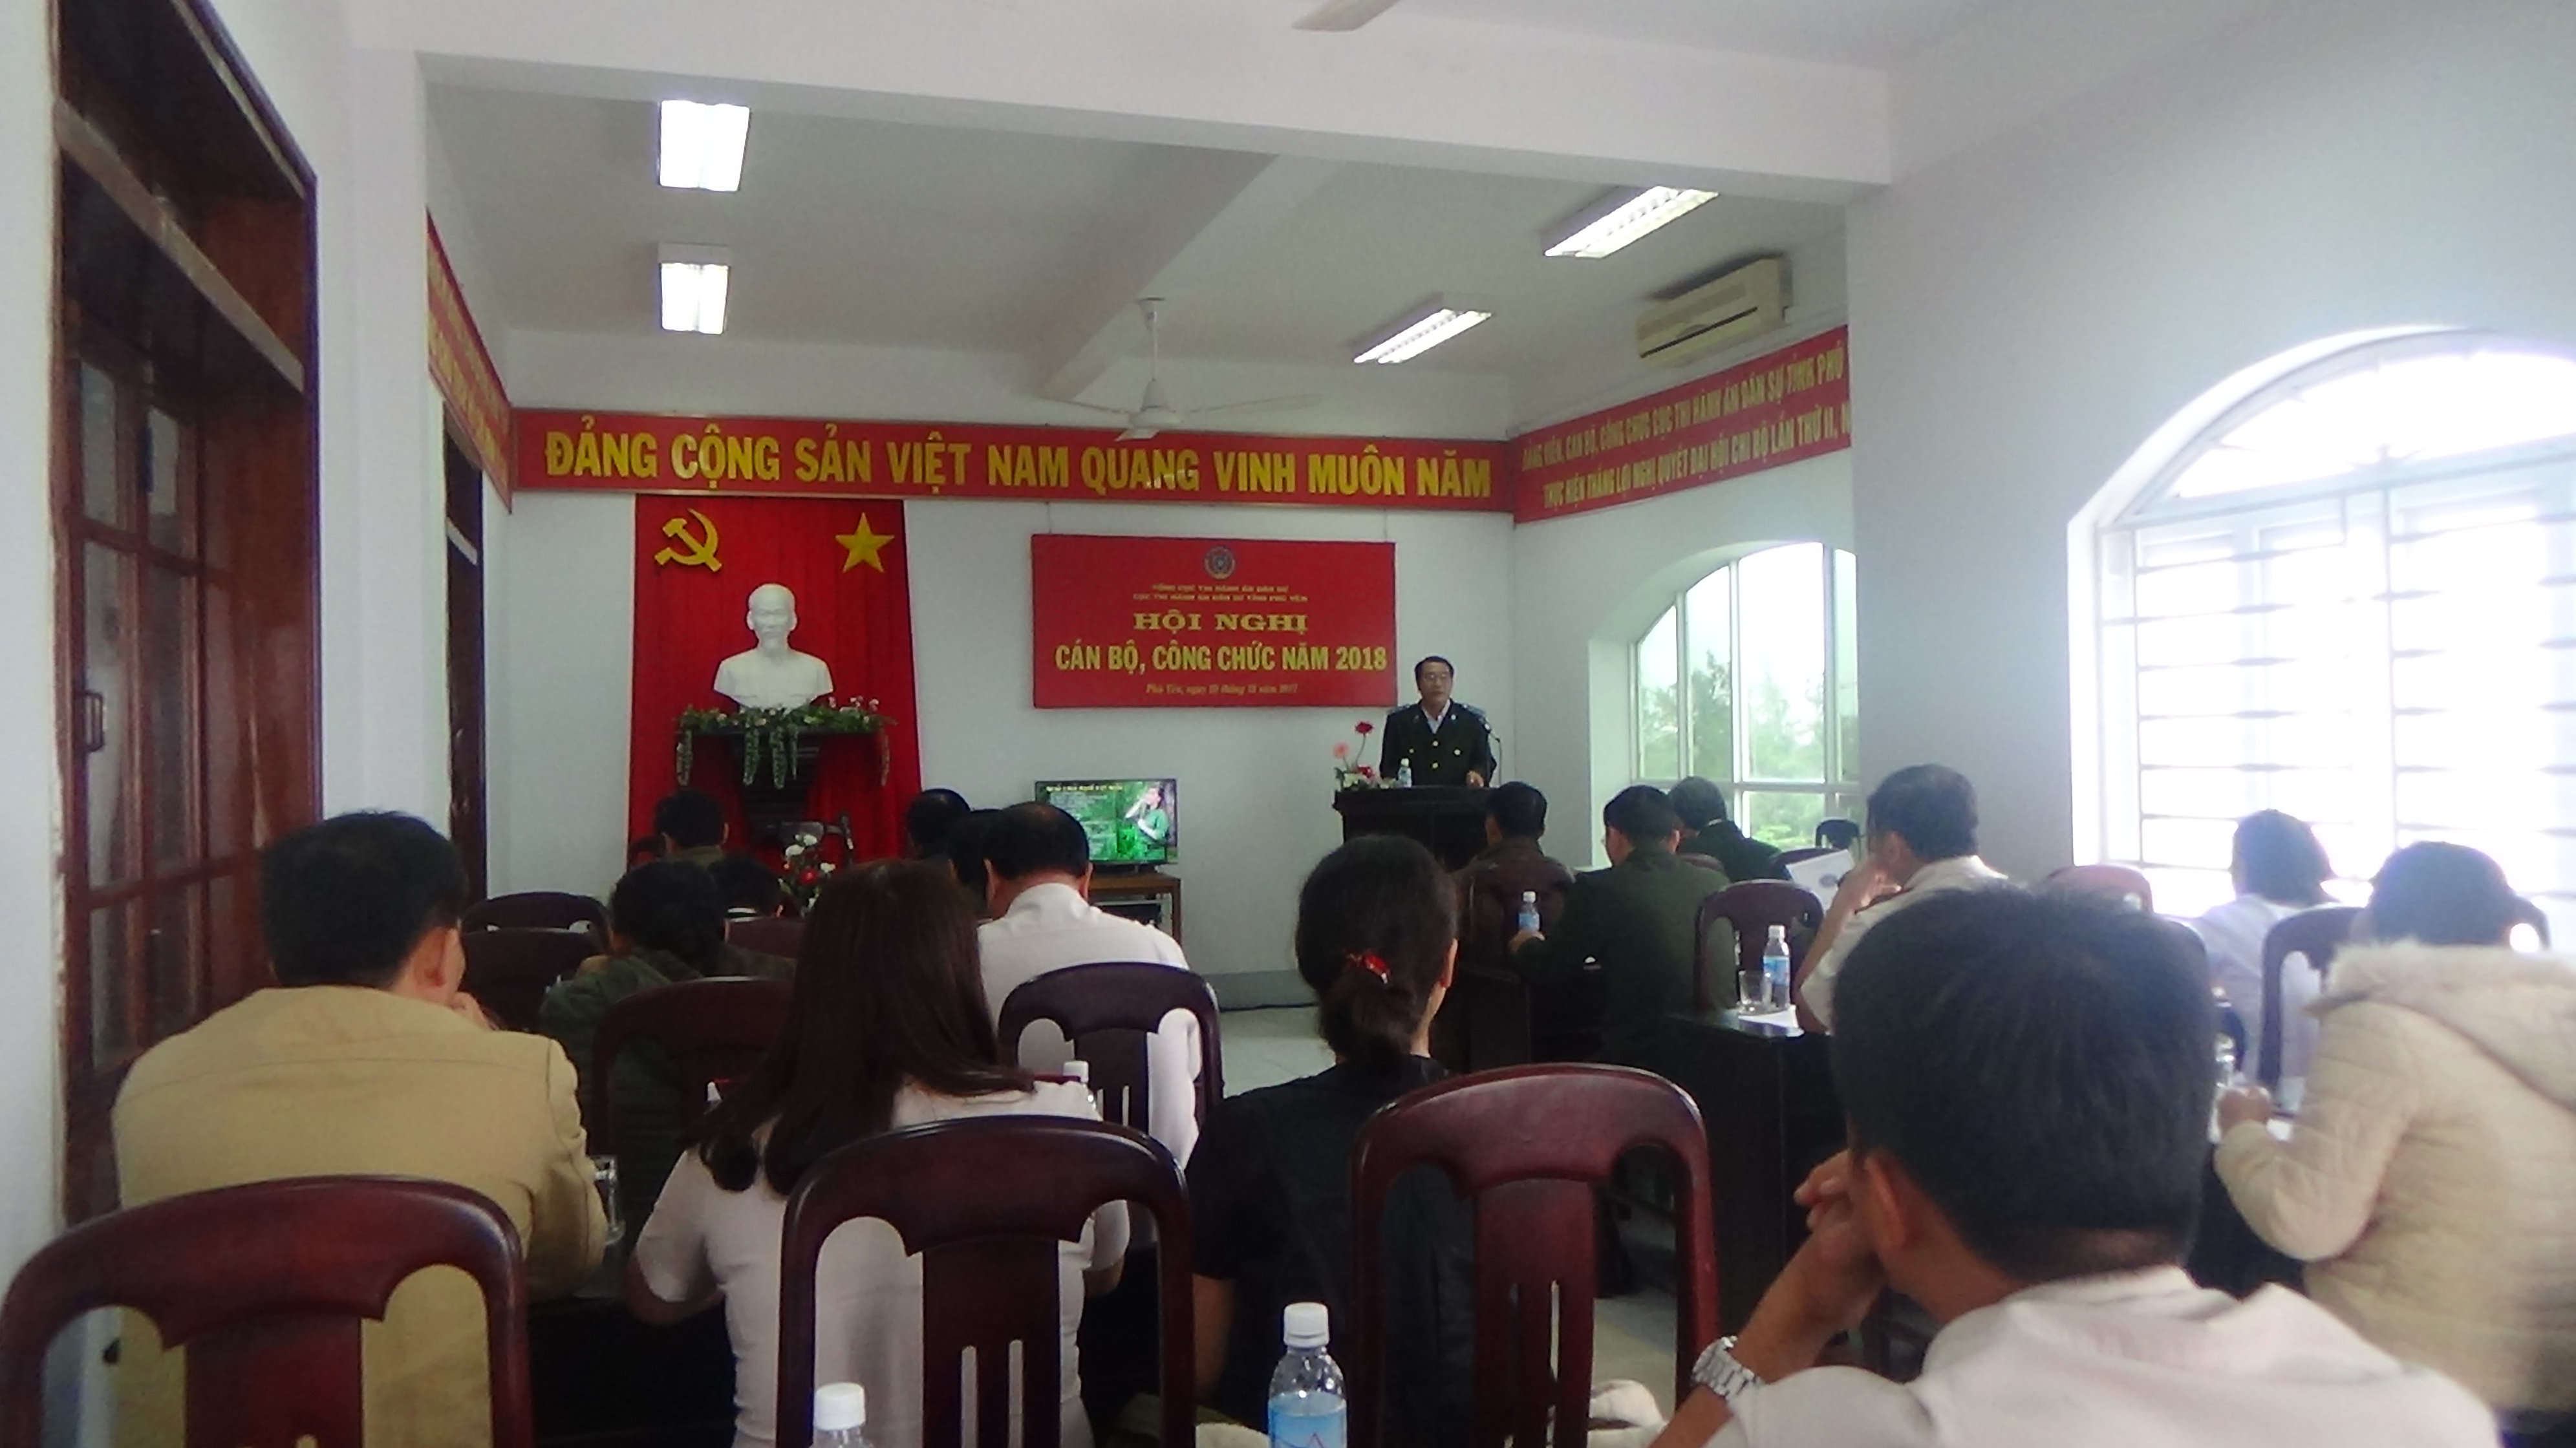 Phú Yên: Cục THADS tổ chức Hội nghị cán bộ, công chức năm 2018